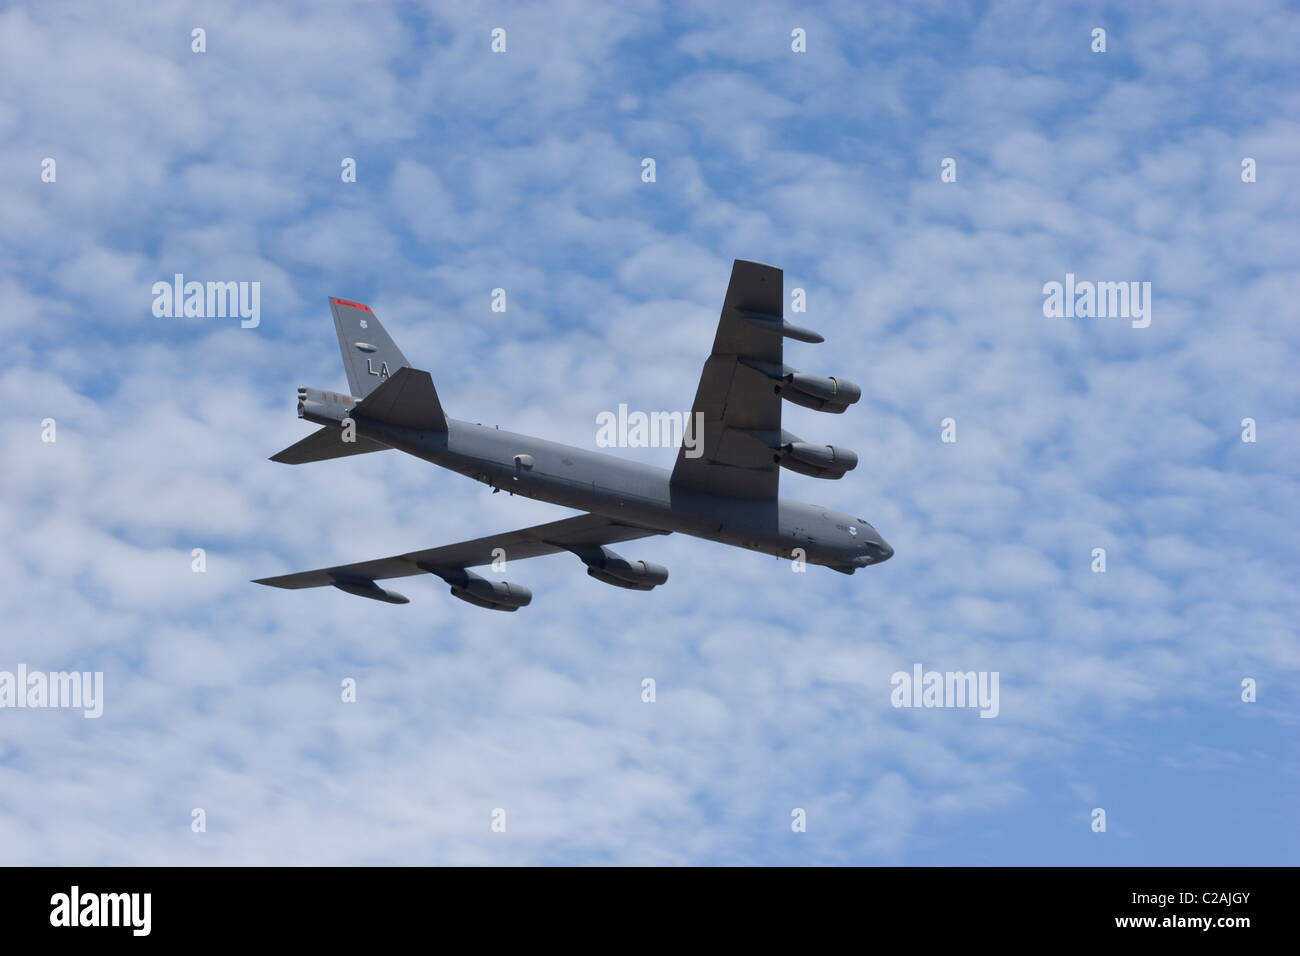 Gran Avión Bombardero B 52 avión militar del comando de la USAF escuadrón raid sky air cloud sun alas fuselaje del motor carga de empuje Foto de stock